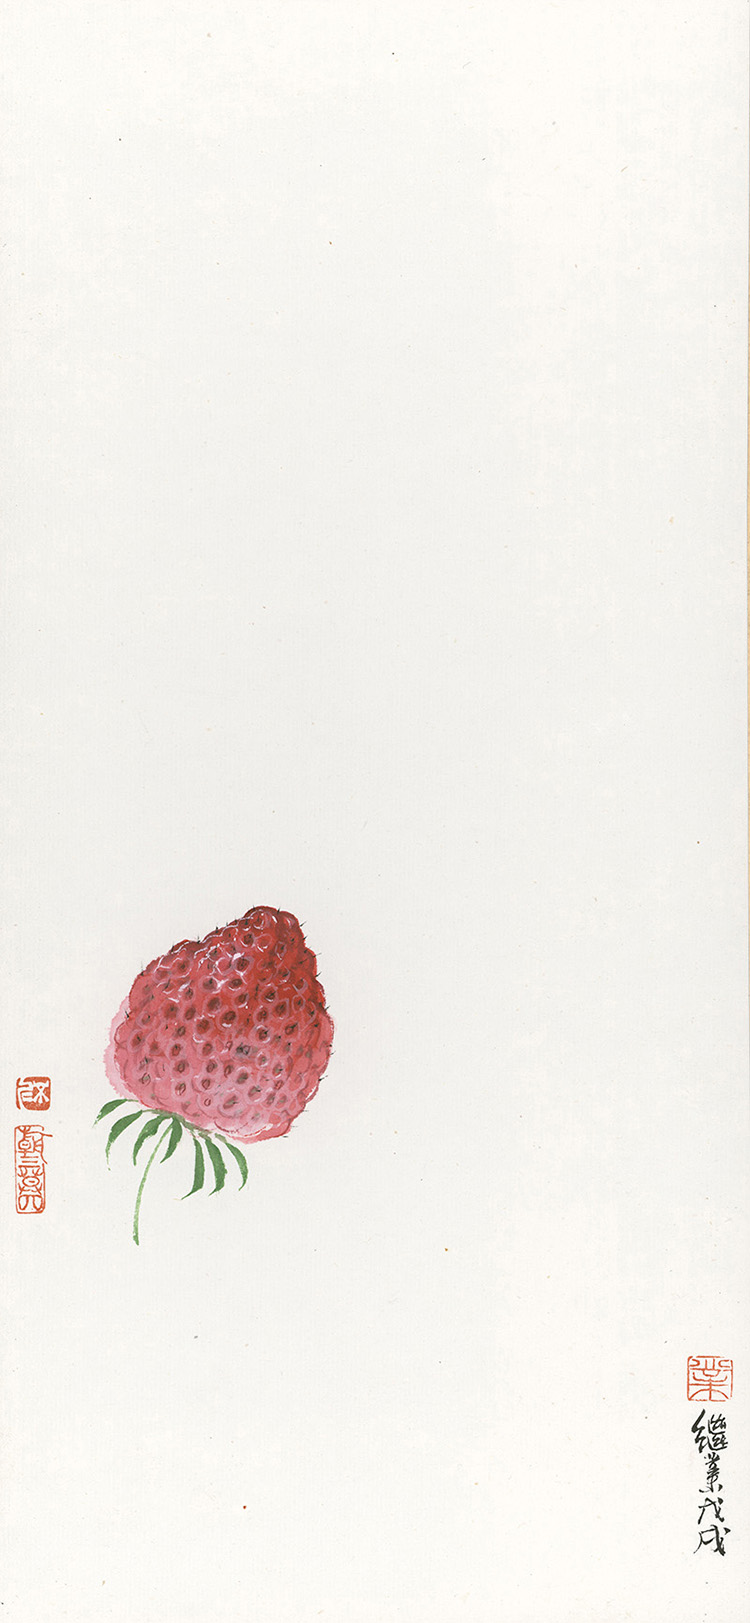 薛继业高仿微喷版画《草莓001》